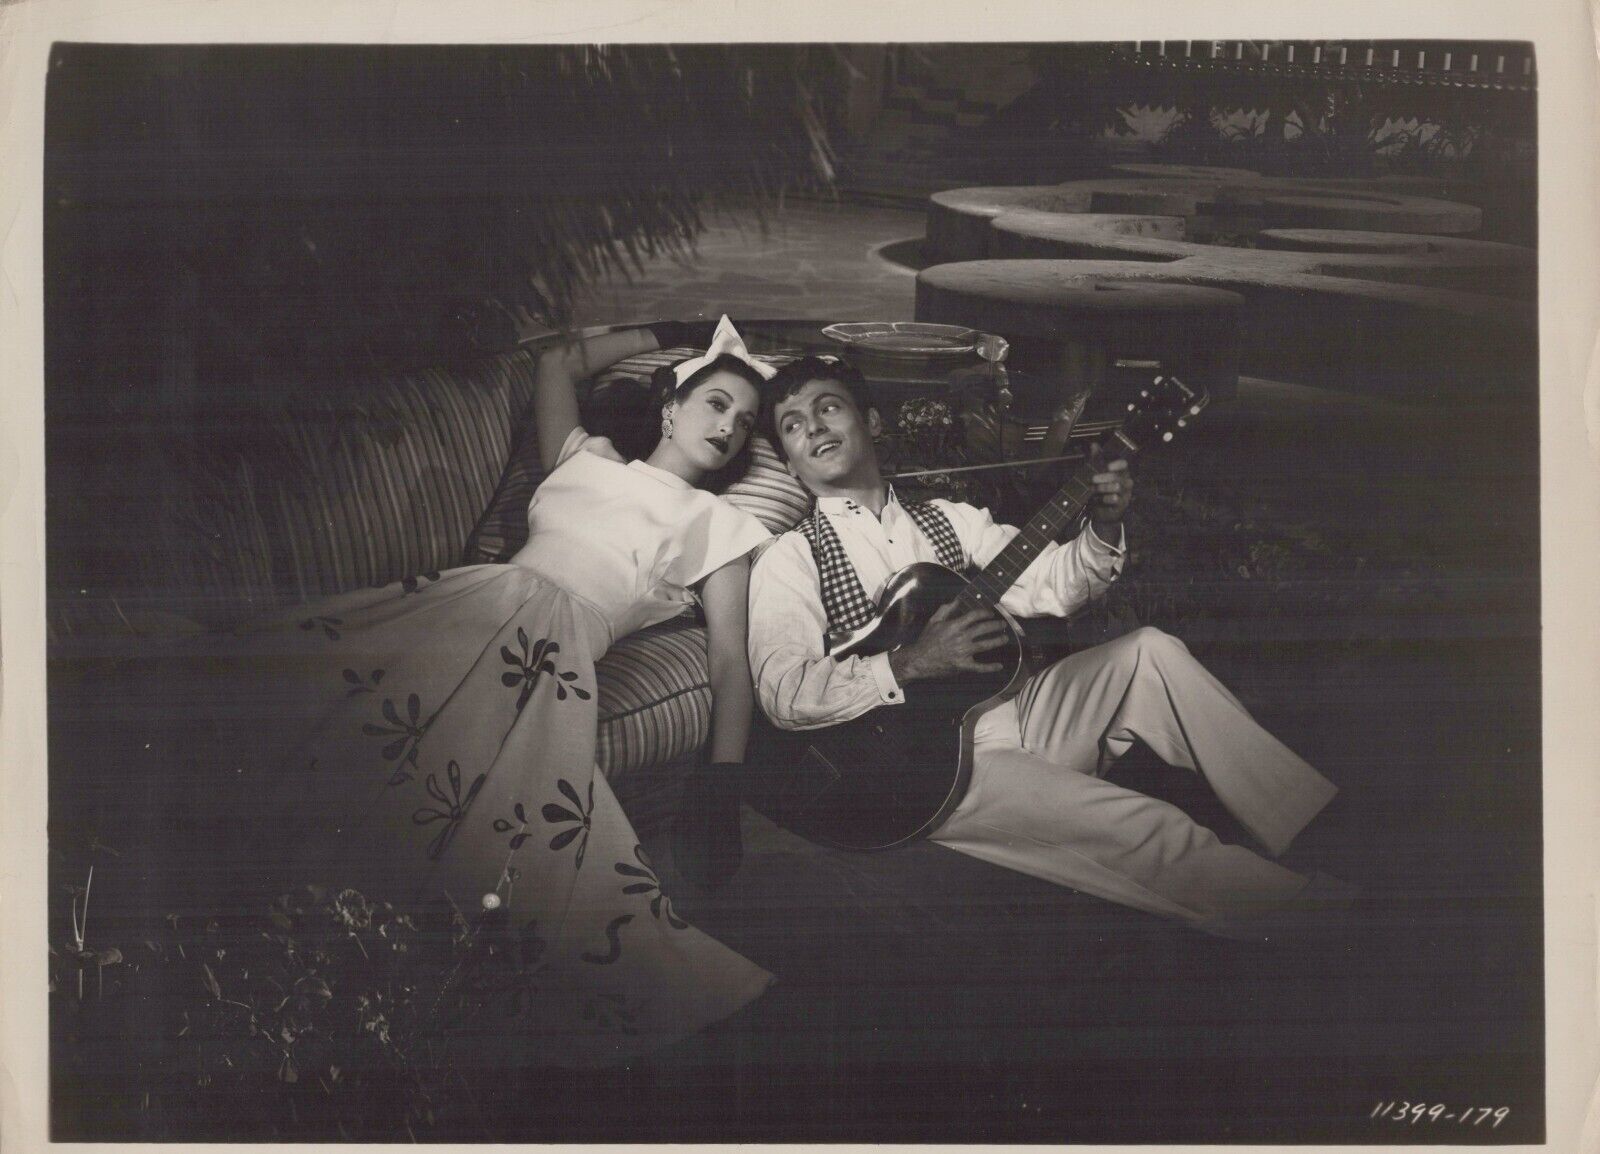 Dorothy Lamour + Arturo de Córdova in Masquerade in Mexico (1945) ❤ Photo K 404